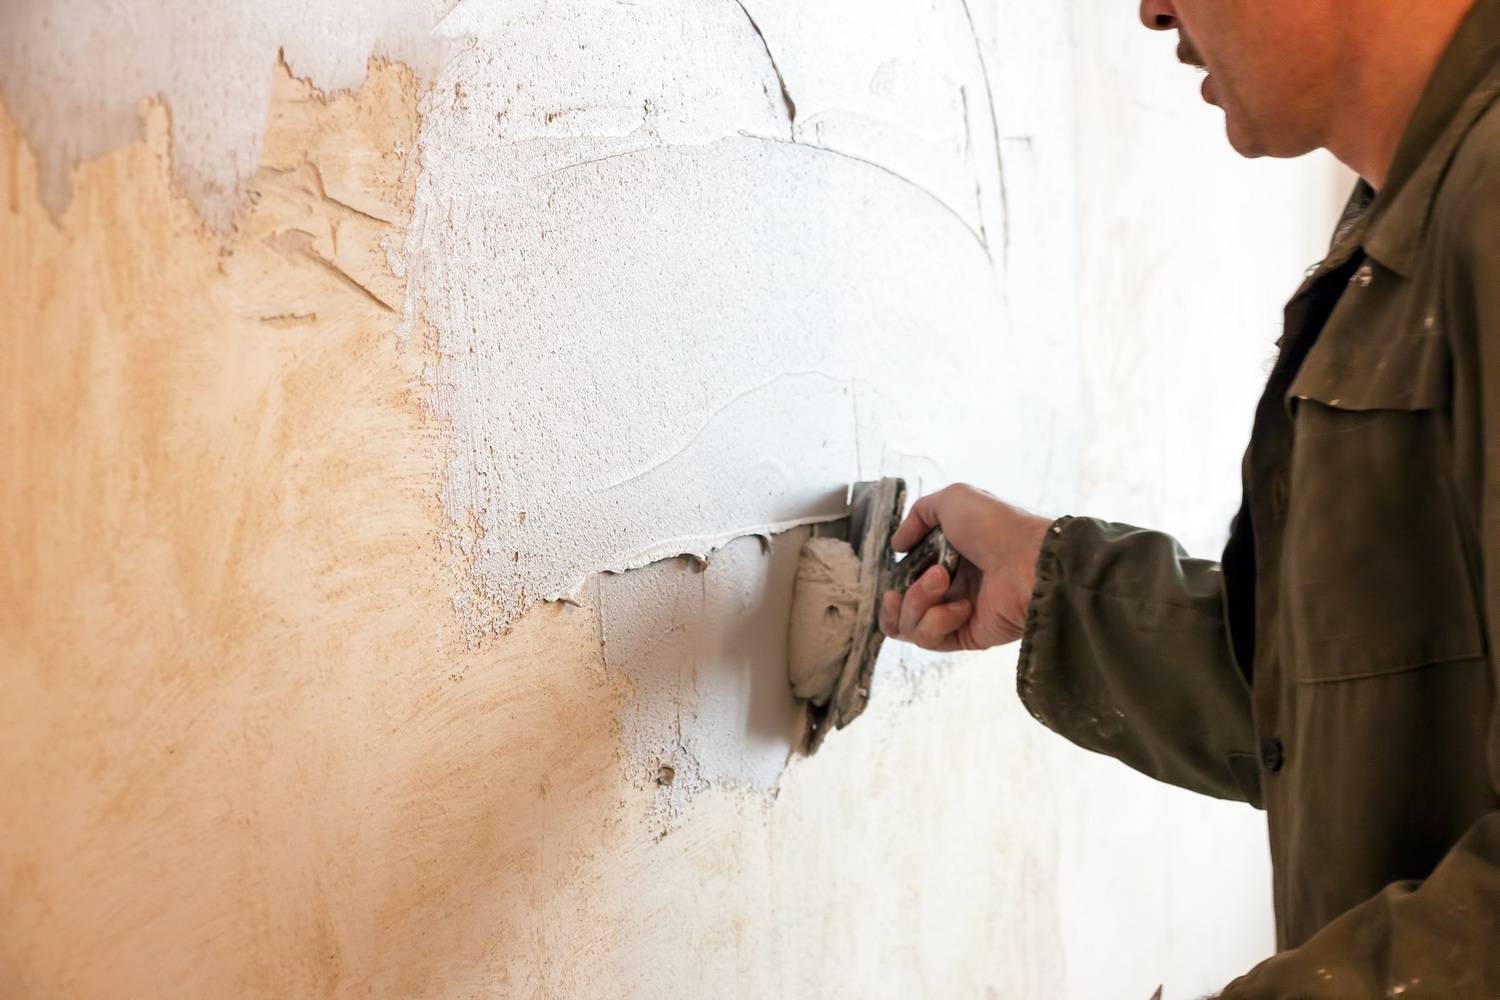 Как выровнять стены в квартире под обои своими руками – как выбрать материал